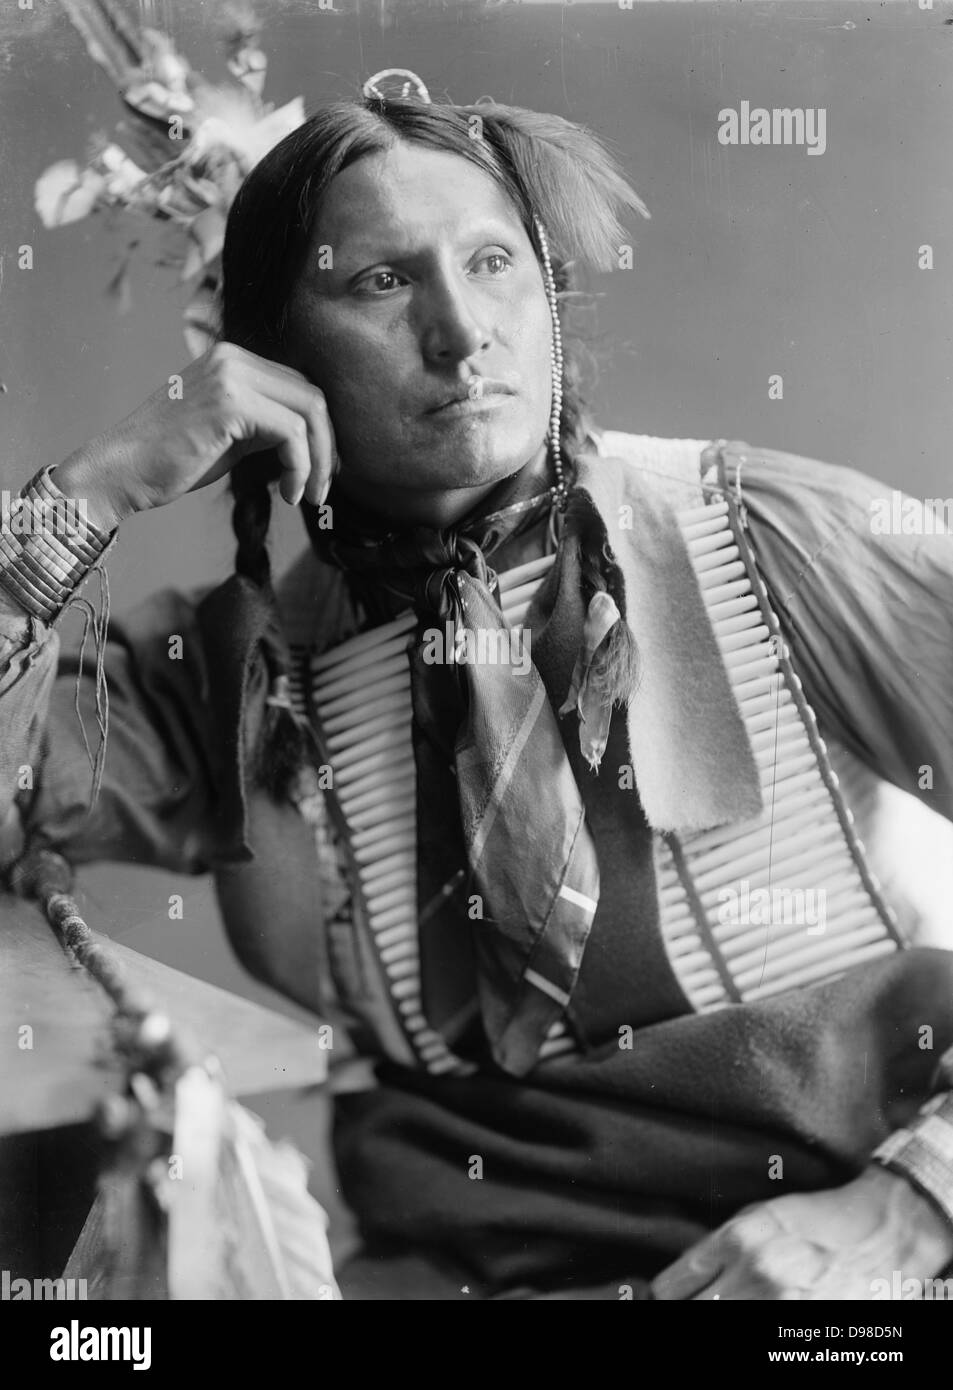 Samuel American Horse, Indianer, wahrscheinlich ein Mitglied von Buffalo Bill's Wild West Show. Fotografische Brustbild nach vorne tragen native Dress, c 1900. Stockfoto